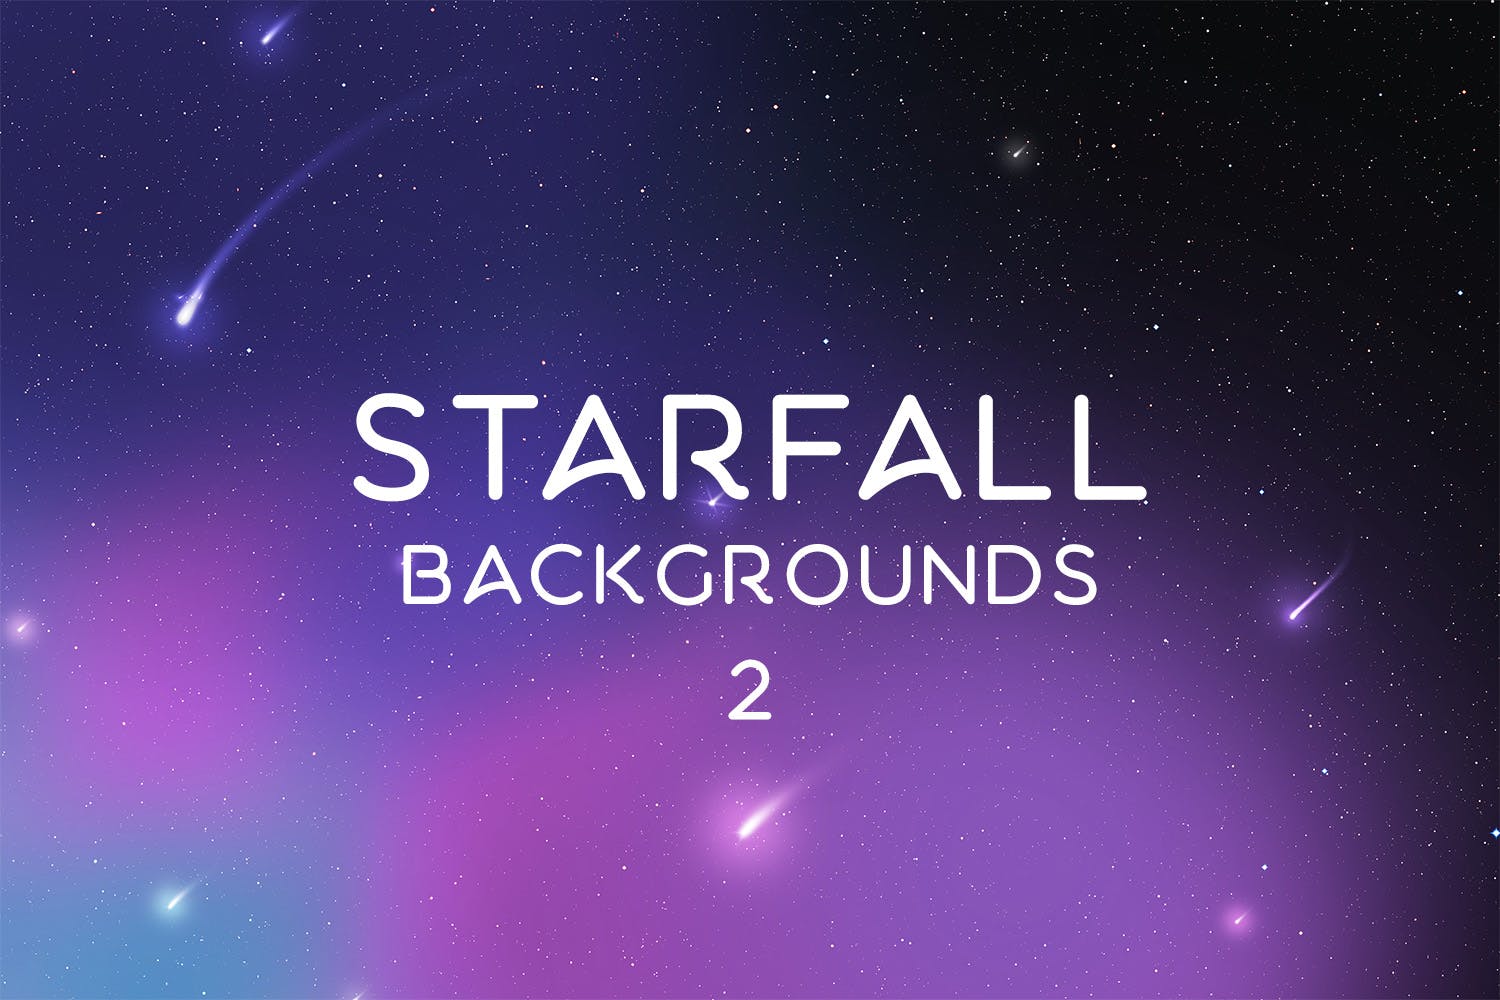 4K抽象星空高清背景图片素材v2 Starfall Backgrounds 2设计素材模板